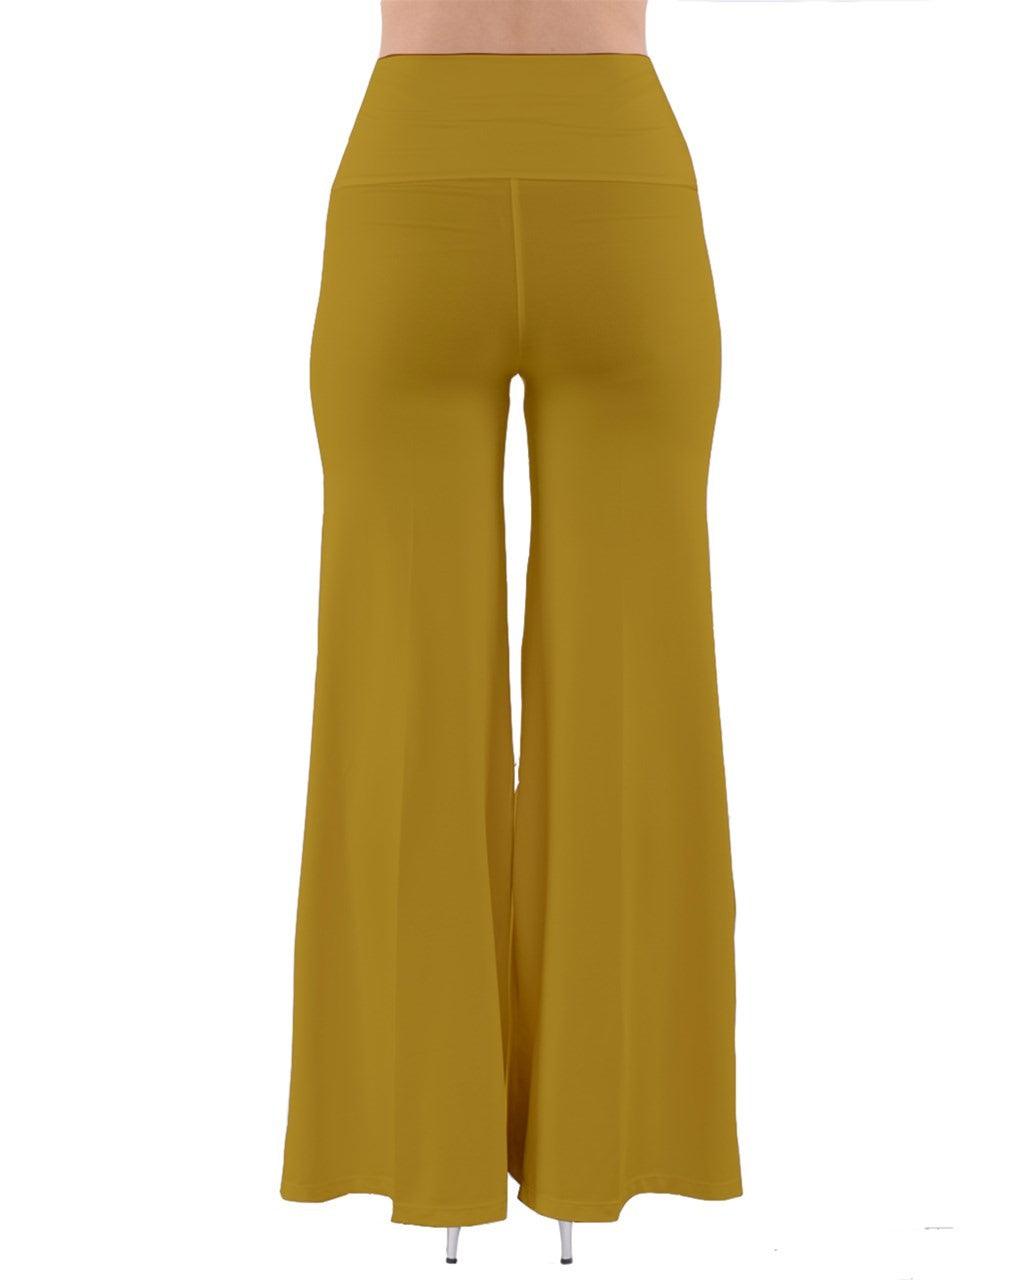 Mina Toddy Yellow Palazzo Pants - Blissfully Brand